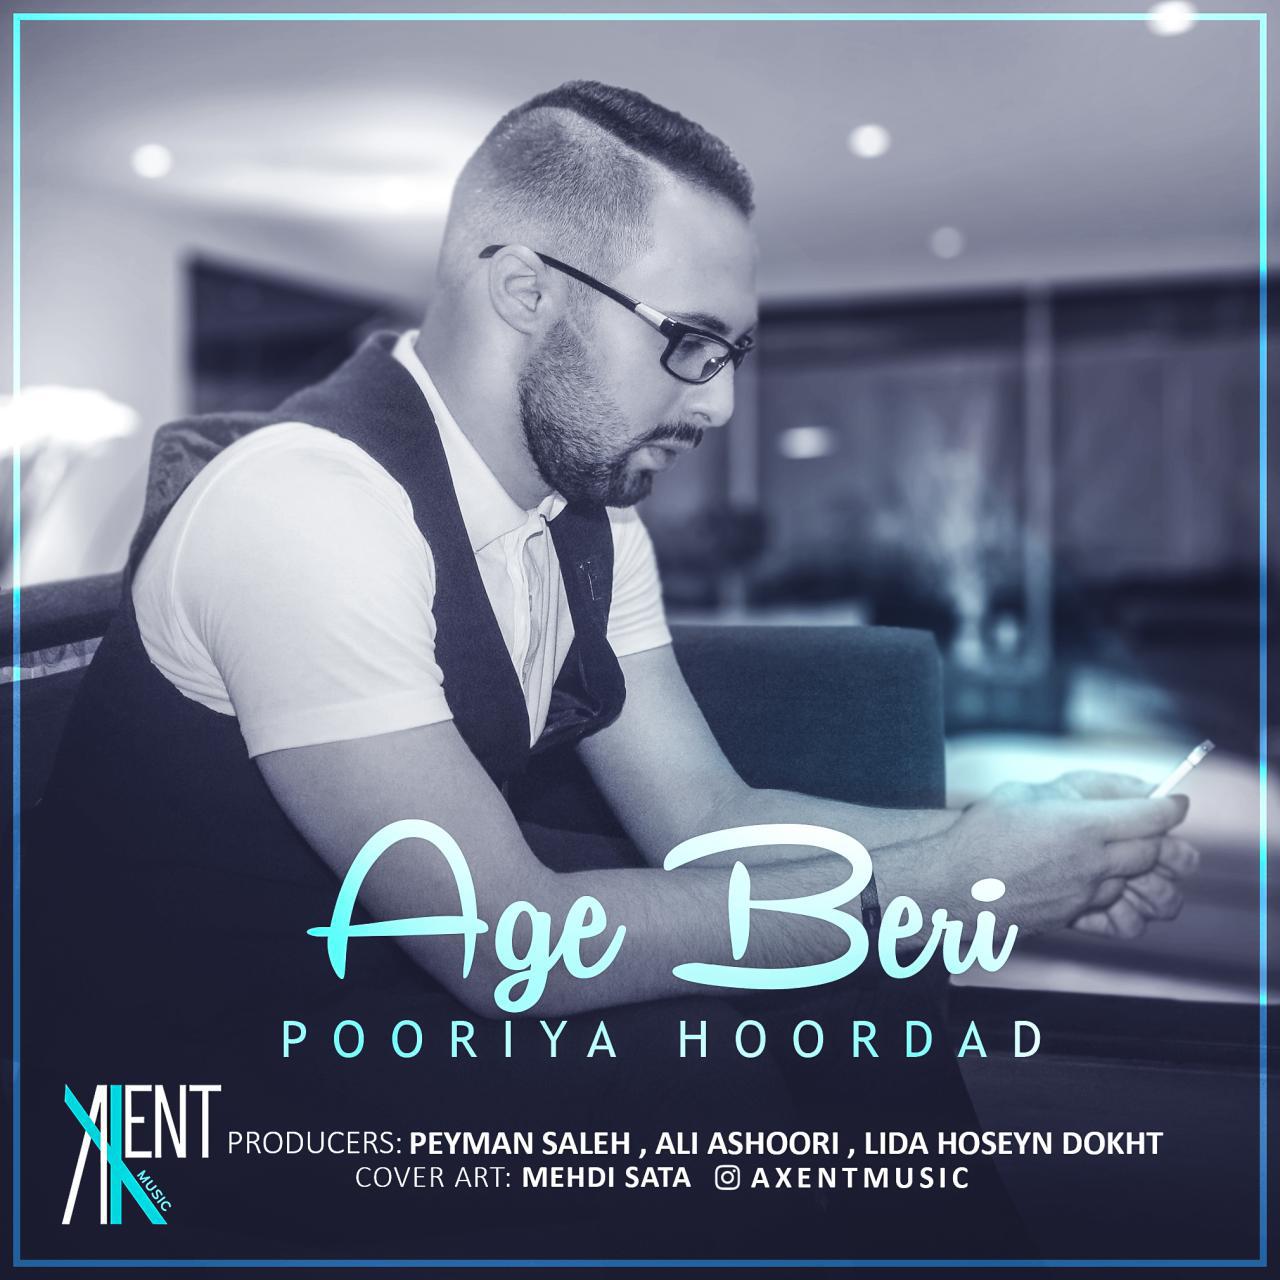 Pooriya Hoordad – Age Beri